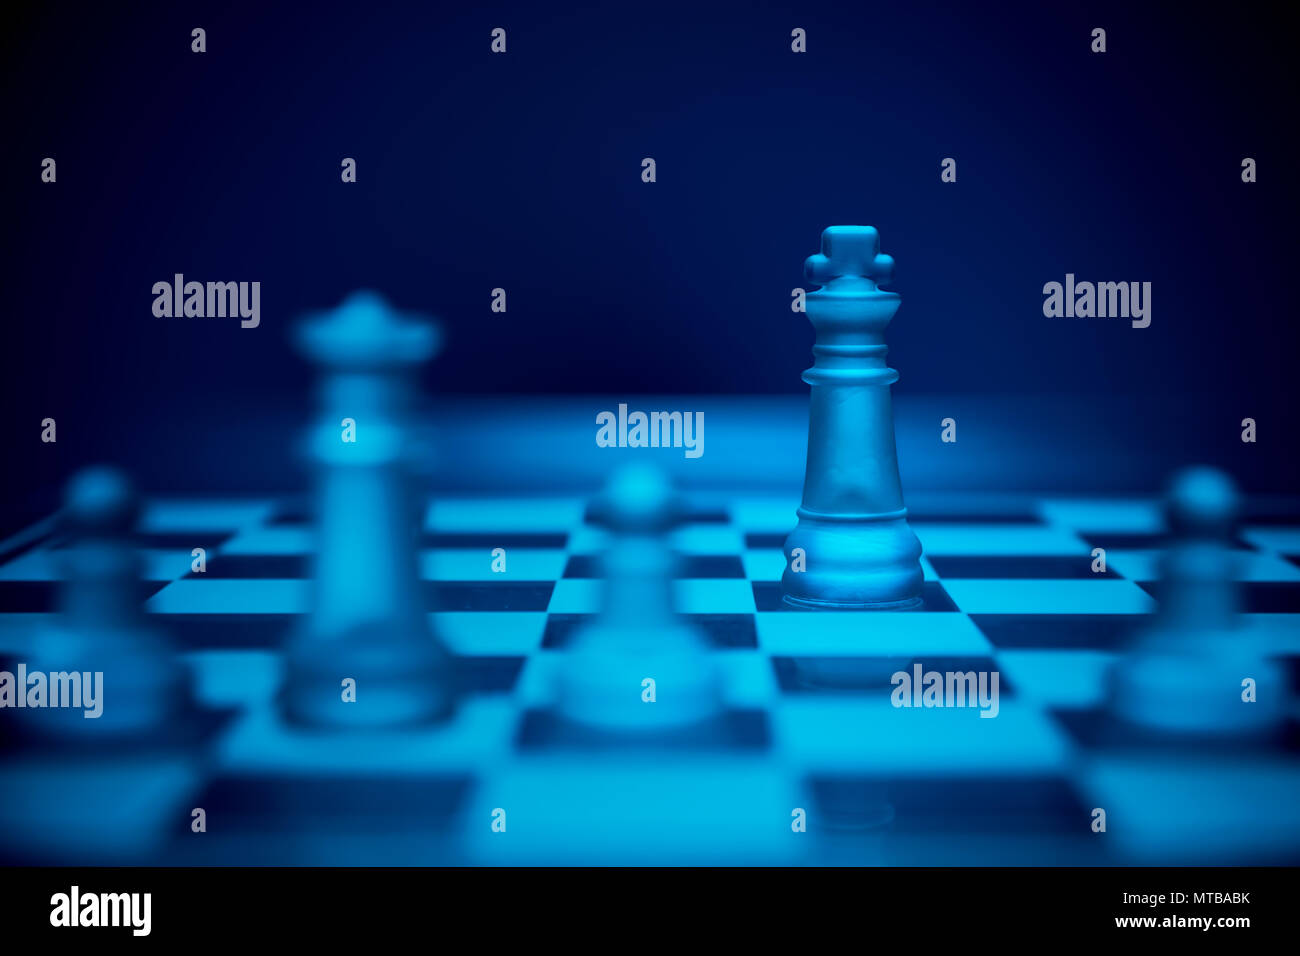 Schach spiel. König ausmanövriert und Patt von der Königin und Bauern  Stockfotografie - Alamy